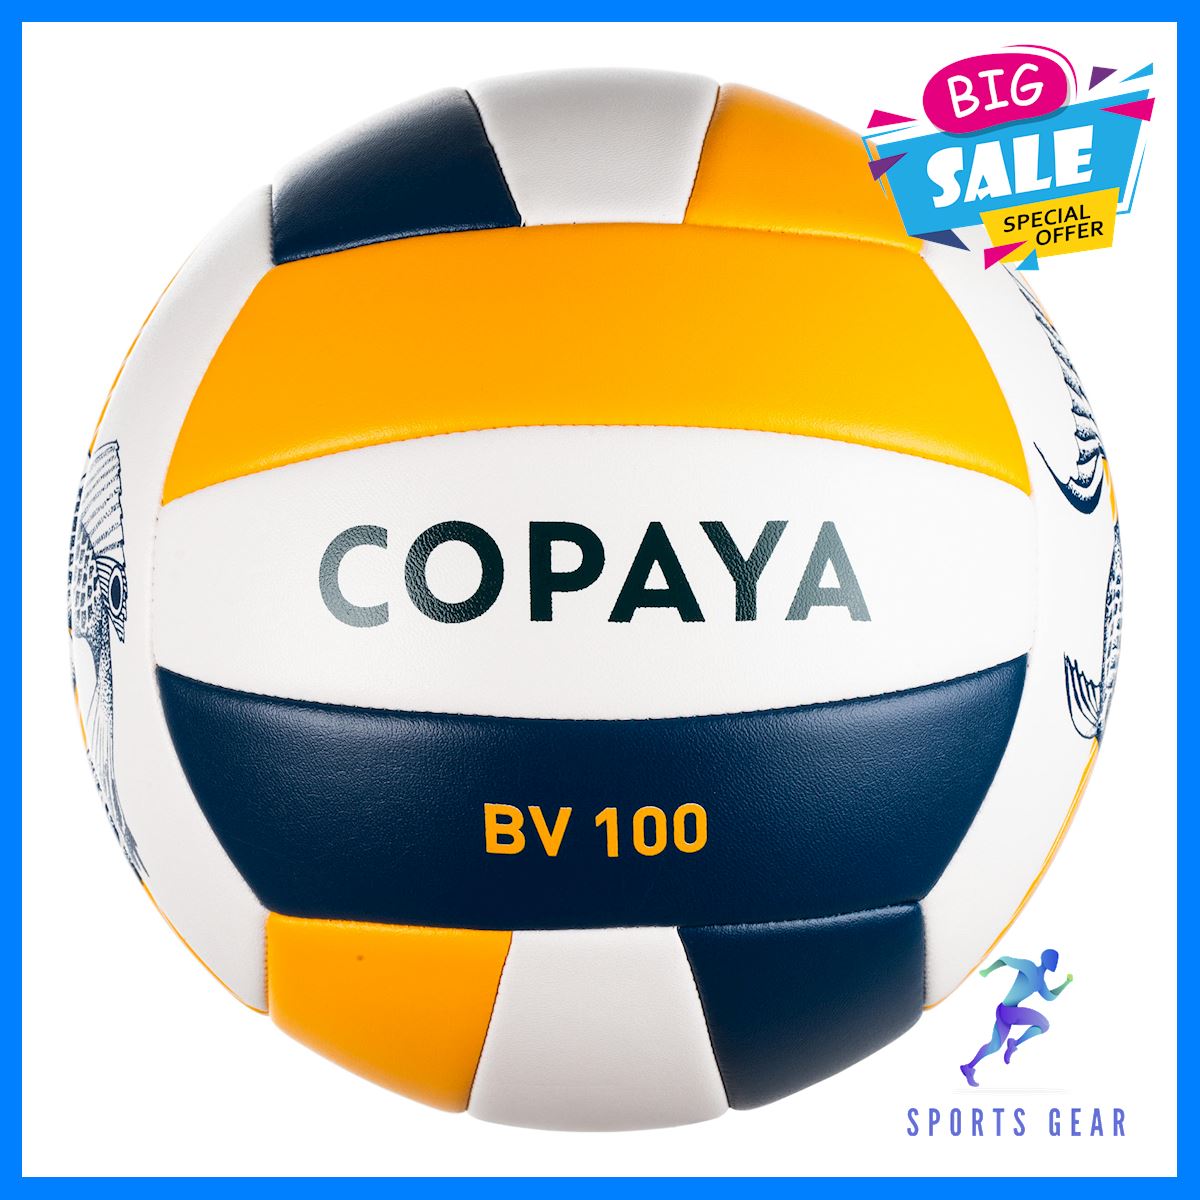 COPAYA วอลเลย์บอลชายหาด ลูกวอลเลย์บอล ลูกบอล ลูกวอลเลย์บอลชายหาด รุ่น BVBS100 (สีน้ำเงิน/เหลือง) Volleyball วอลเลย์ วอลเลย์บอล อุปกรณ์กีฬา